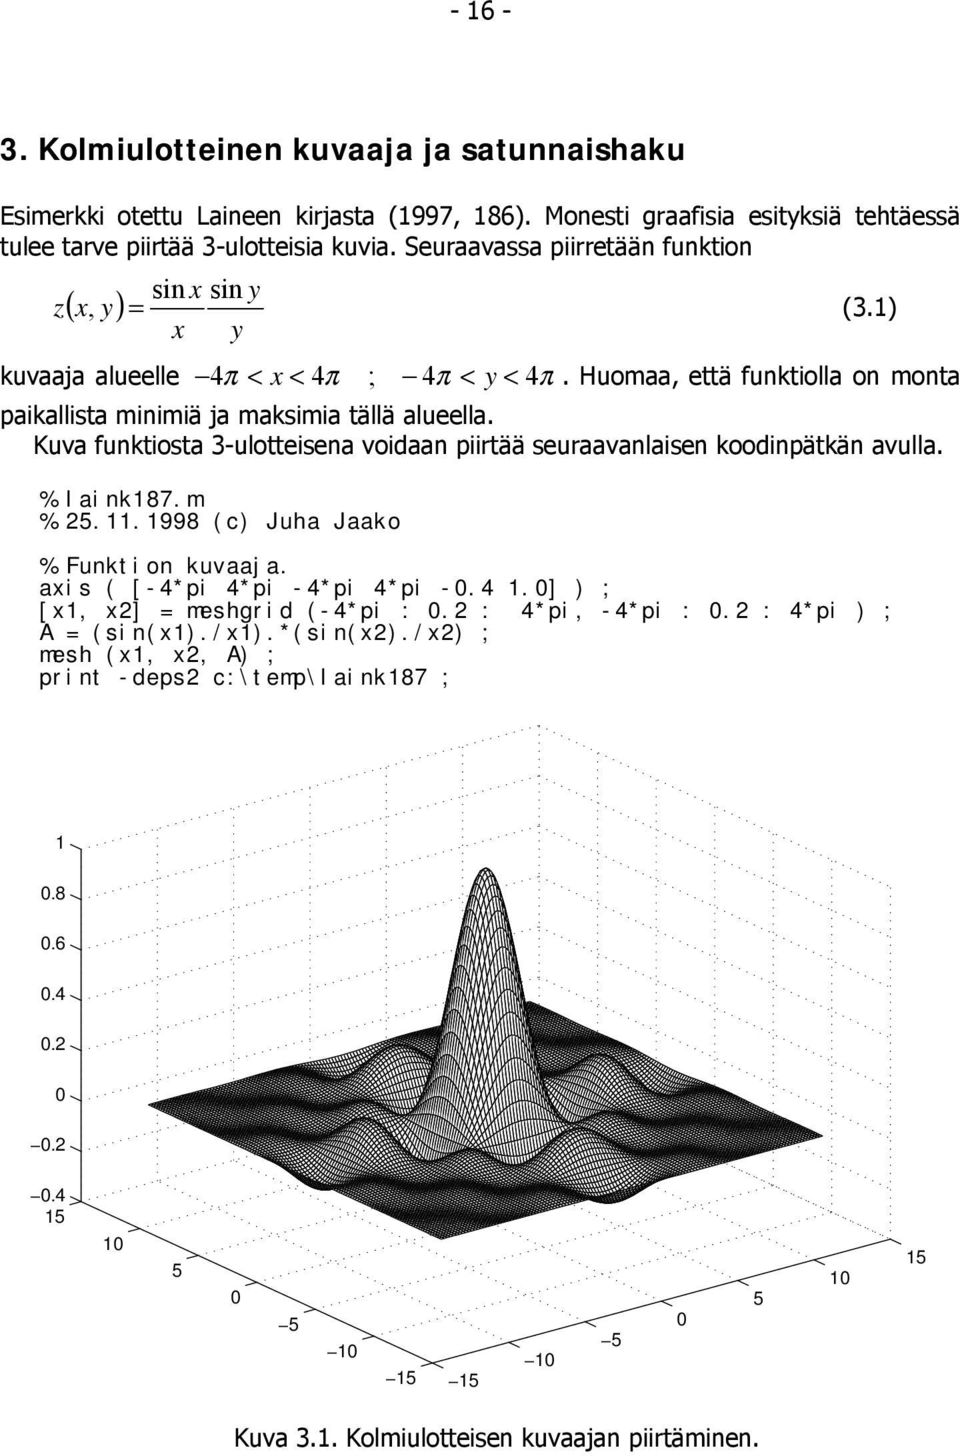 Kuva funktiosta 3-ulotteisena voidaan piirtää seuraavanlaisen koodinpätkän avulla. % laink87.m % 5..998 (c) Juha Jaako % Funktion kuvaaja. axis ( [-4*pi 4*pi -4*pi 4*pi -0.4.0] ) ; [x, x] = meshgrid (-4*pi : 0.